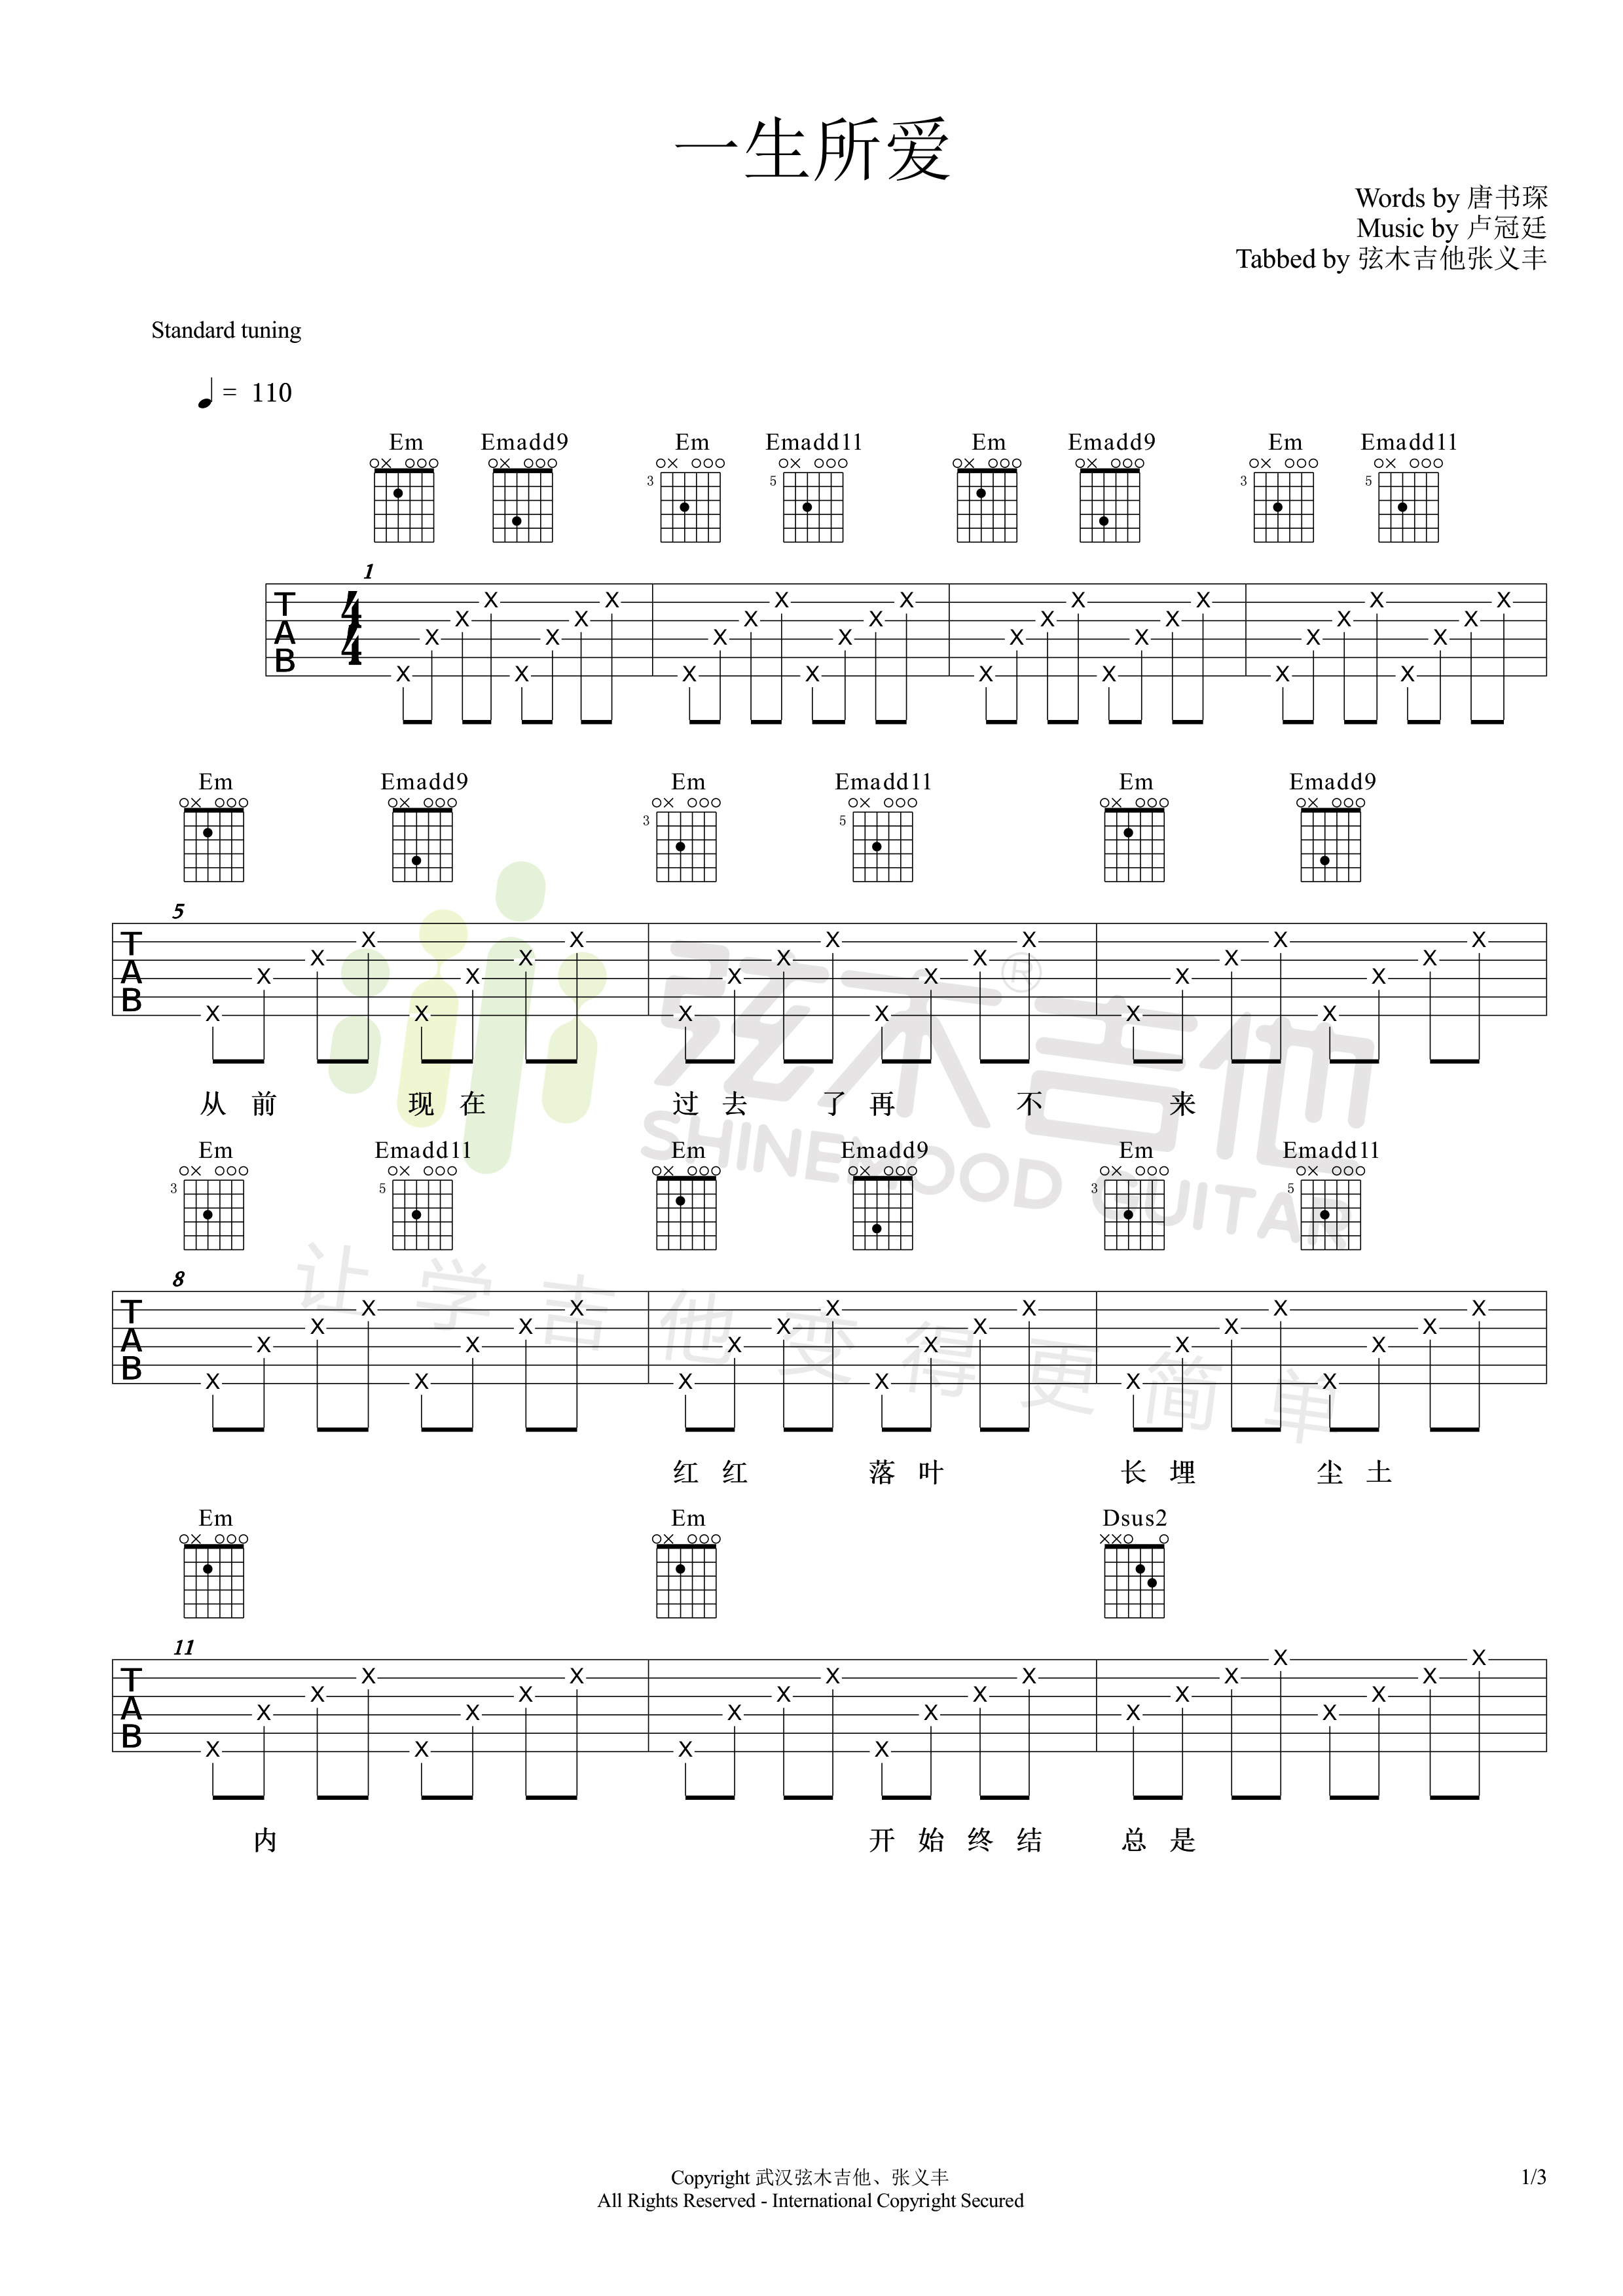 卢冠廷《一生所爱》吉他谱-Guitar Music Score